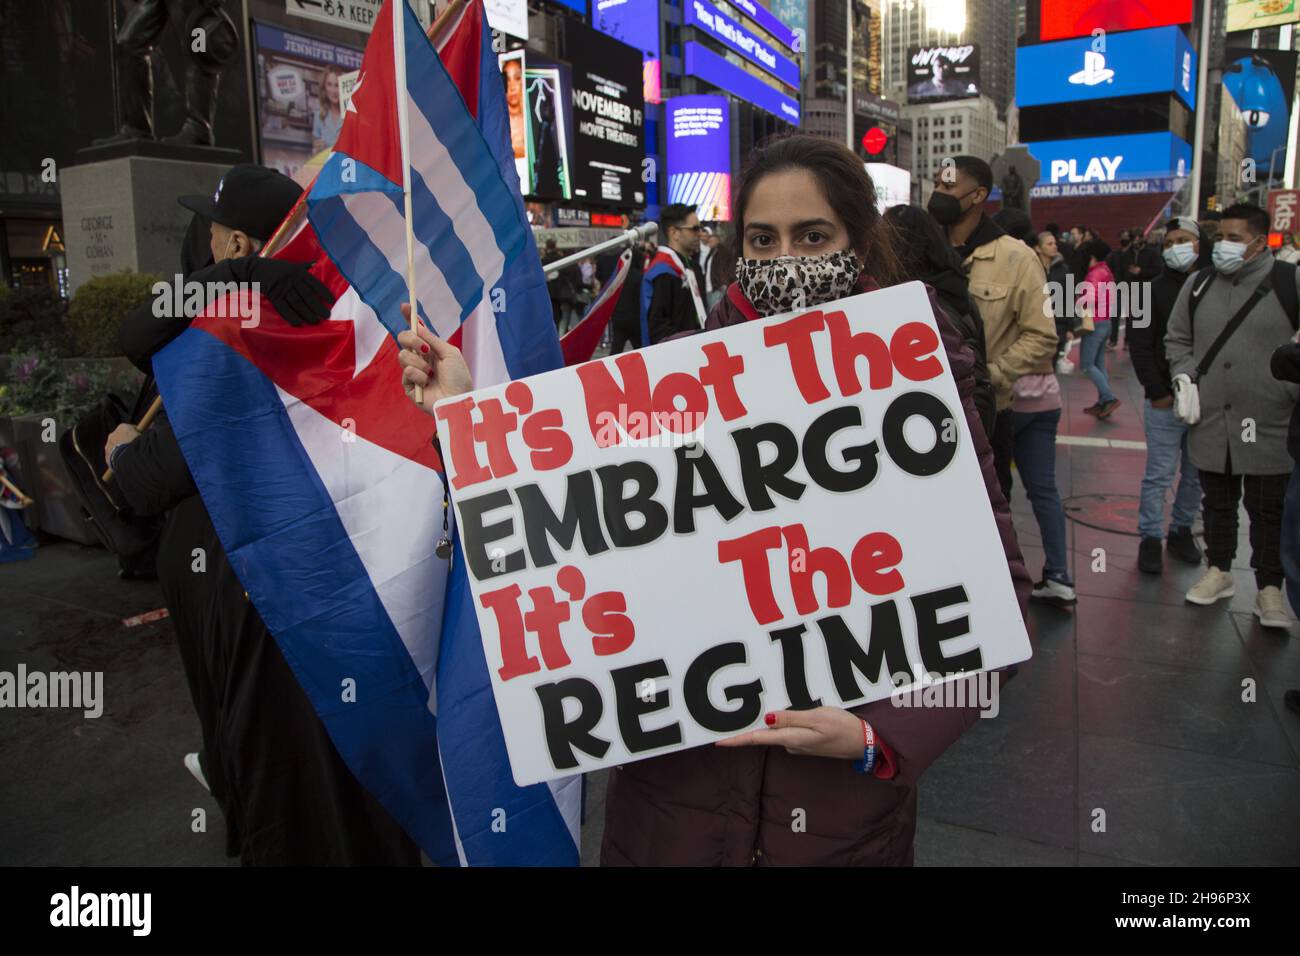 Les Cubains de la ville de New York font preuve de sensibilisation à la répression et aux problèmes à Cuba.Leur devise est « ce n'est pas l'embargo, c'est le régime ». Banque D'Images